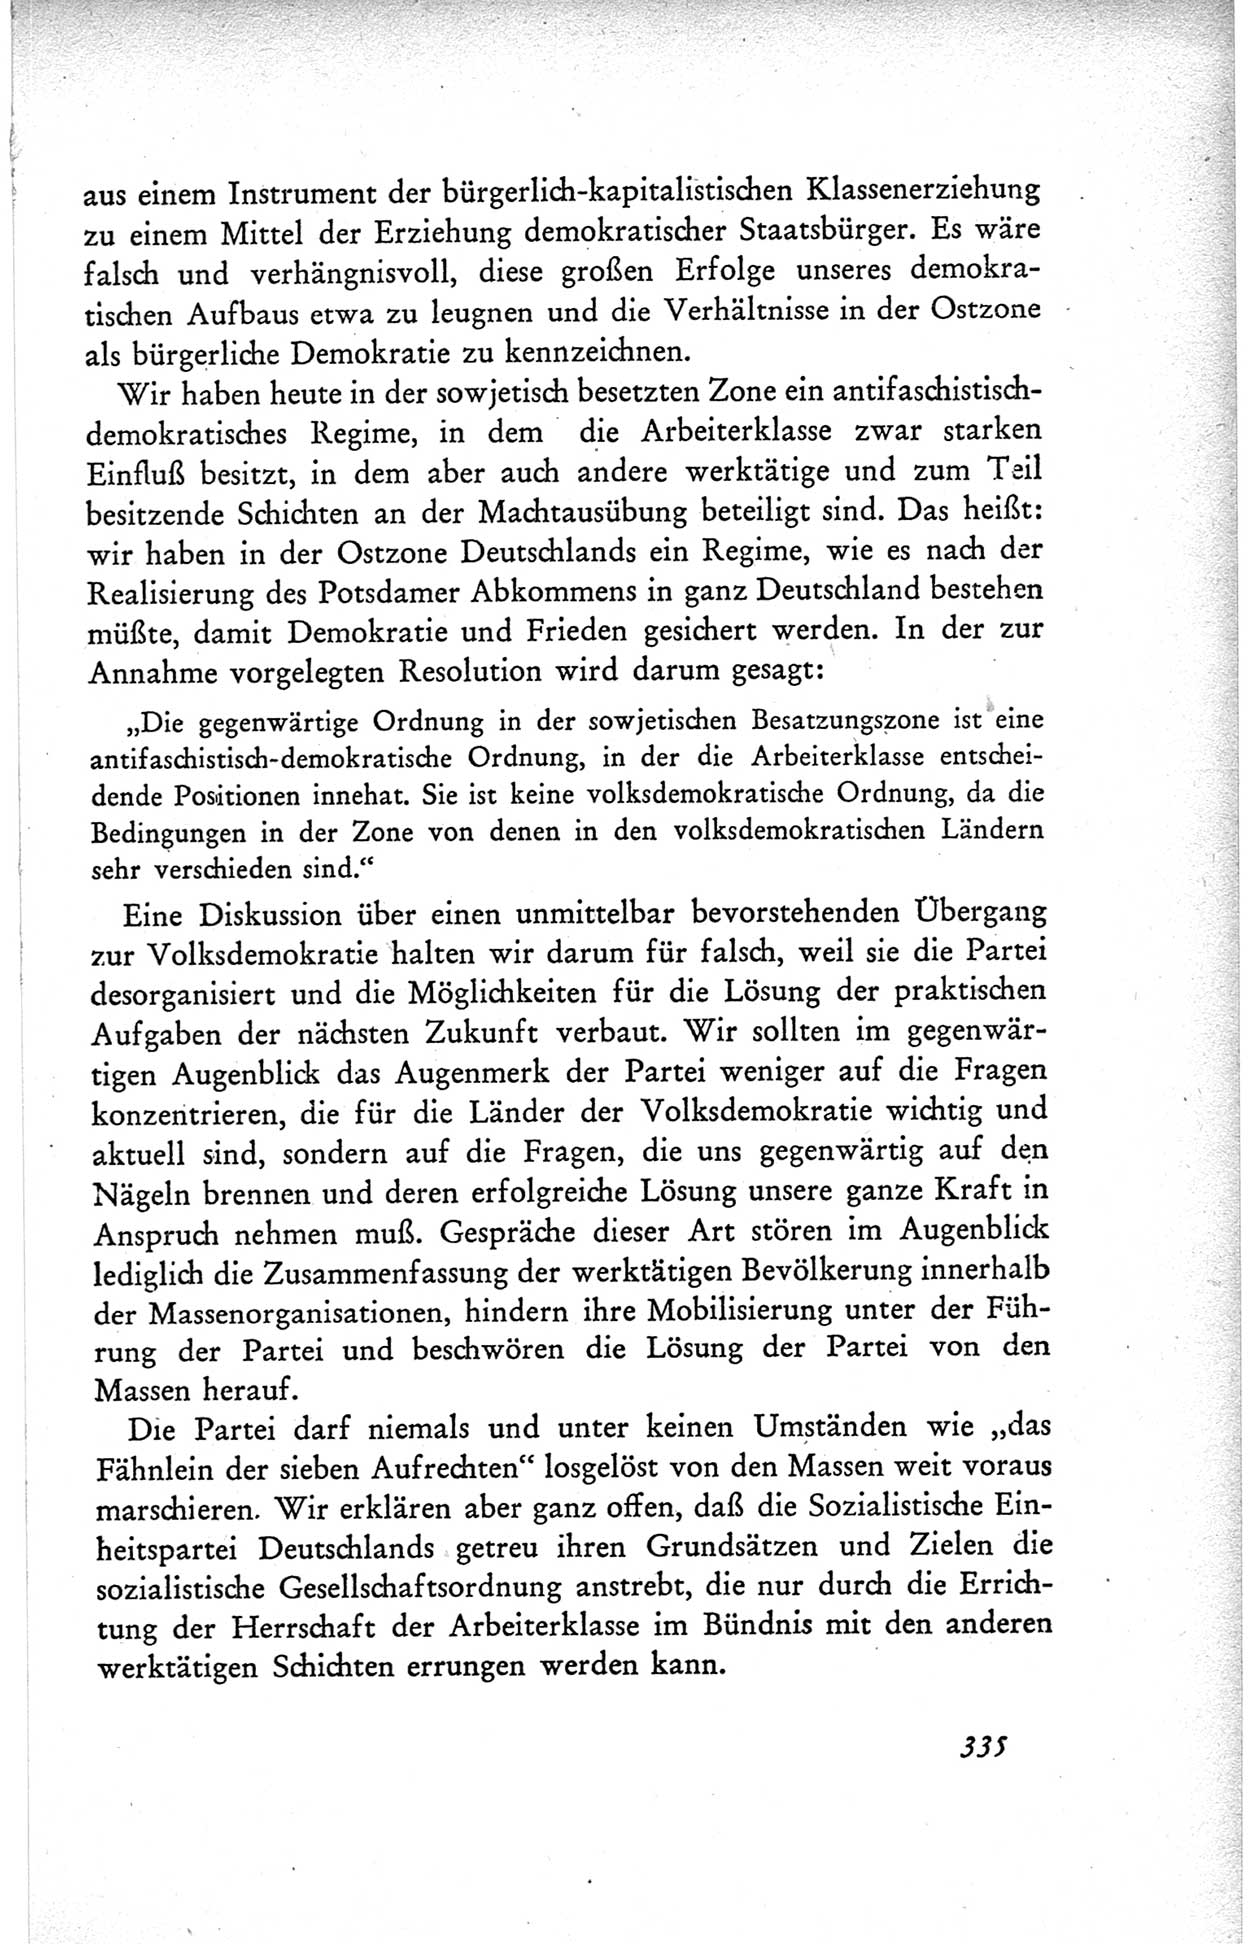 Protokoll der ersten Parteikonferenz der Sozialistischen Einheitspartei Deutschlands (SED) [Sowjetische Besatzungszone (SBZ) Deutschlands] vom 25. bis 28. Januar 1949 im Hause der Deutschen Wirtschaftskommission zu Berlin, Seite 335 (Prot. 1. PK SED SBZ Dtl. 1949, S. 335)